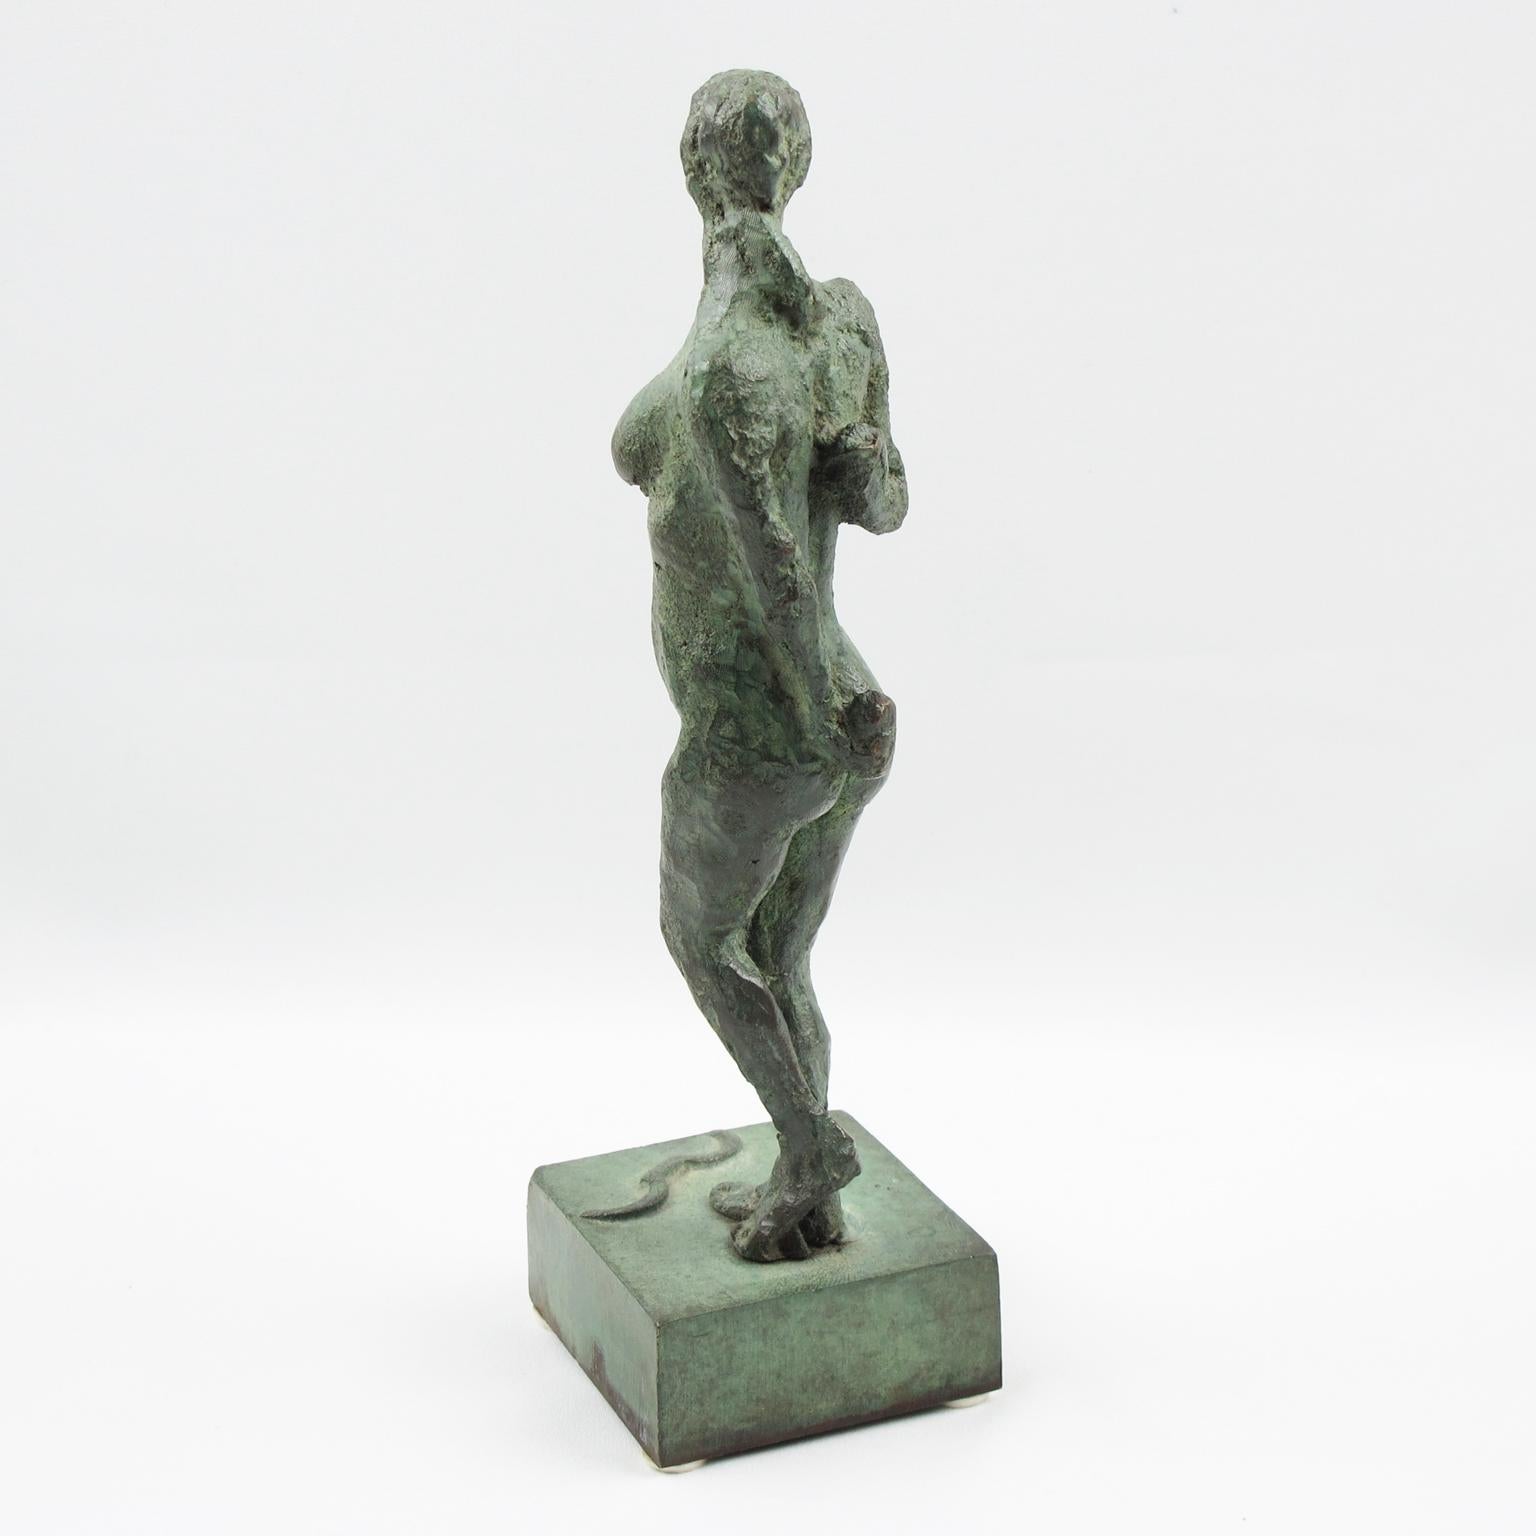 Dies ist eine atemberaubende Französisch Art Deco Bronze-Skulptur Figurine. Die Statue zeigt eine stilisierte Freestyle-Interpretation von Artemis oder Diana der Jägerin (Diane Chasseresse). Die nackte Frau hat ein handgefertigtes, strukturiertes